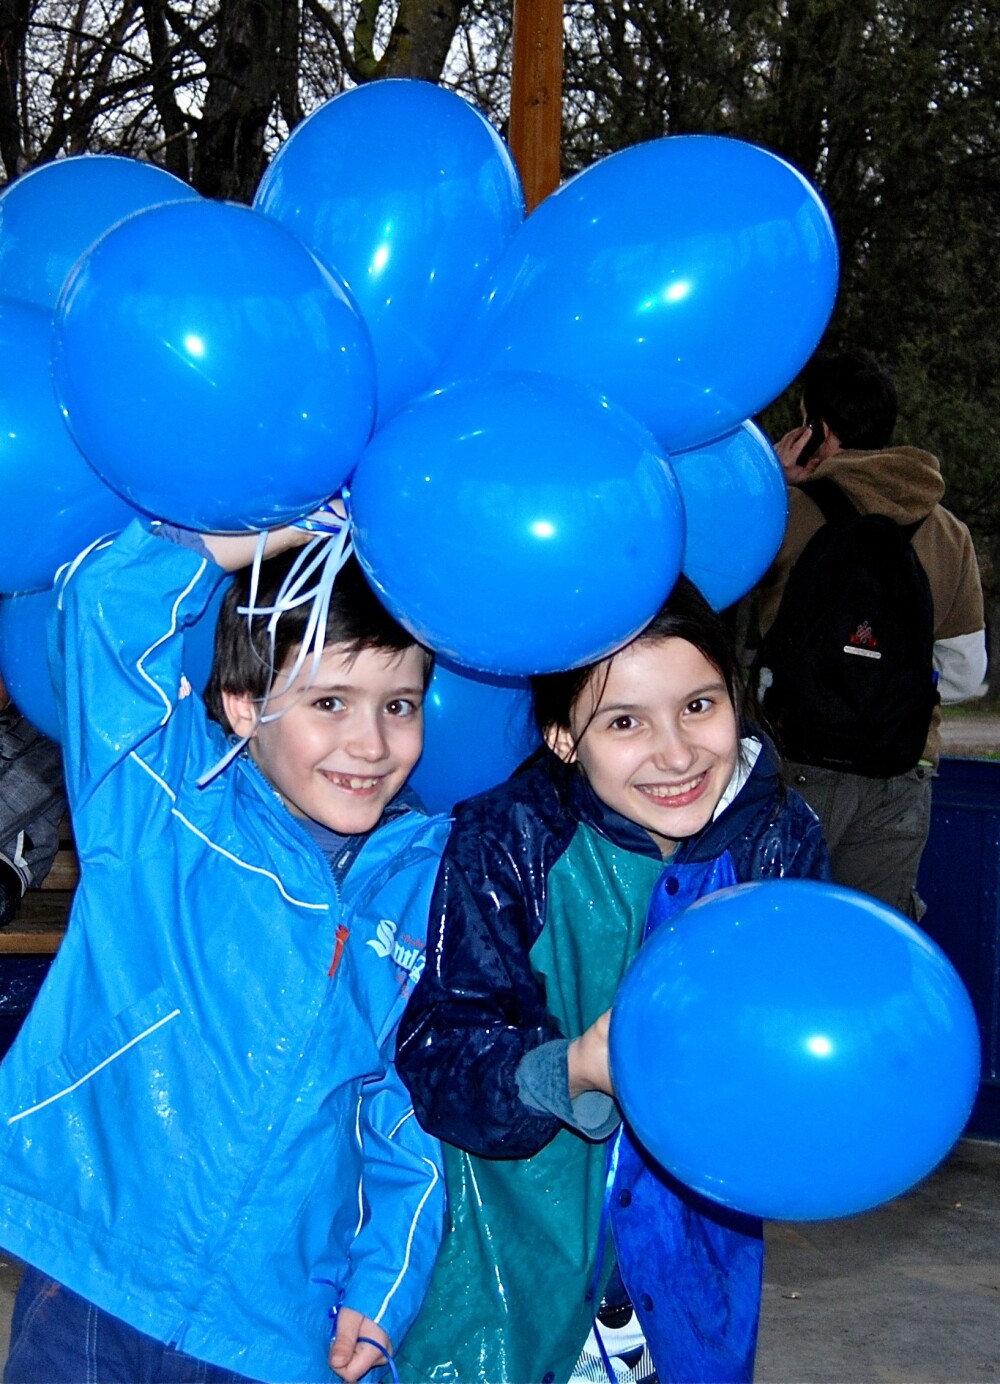 Prima scoala pentru copiii cu autism se deschide in septembrie la Cluj-Napoca - Imaginea 2